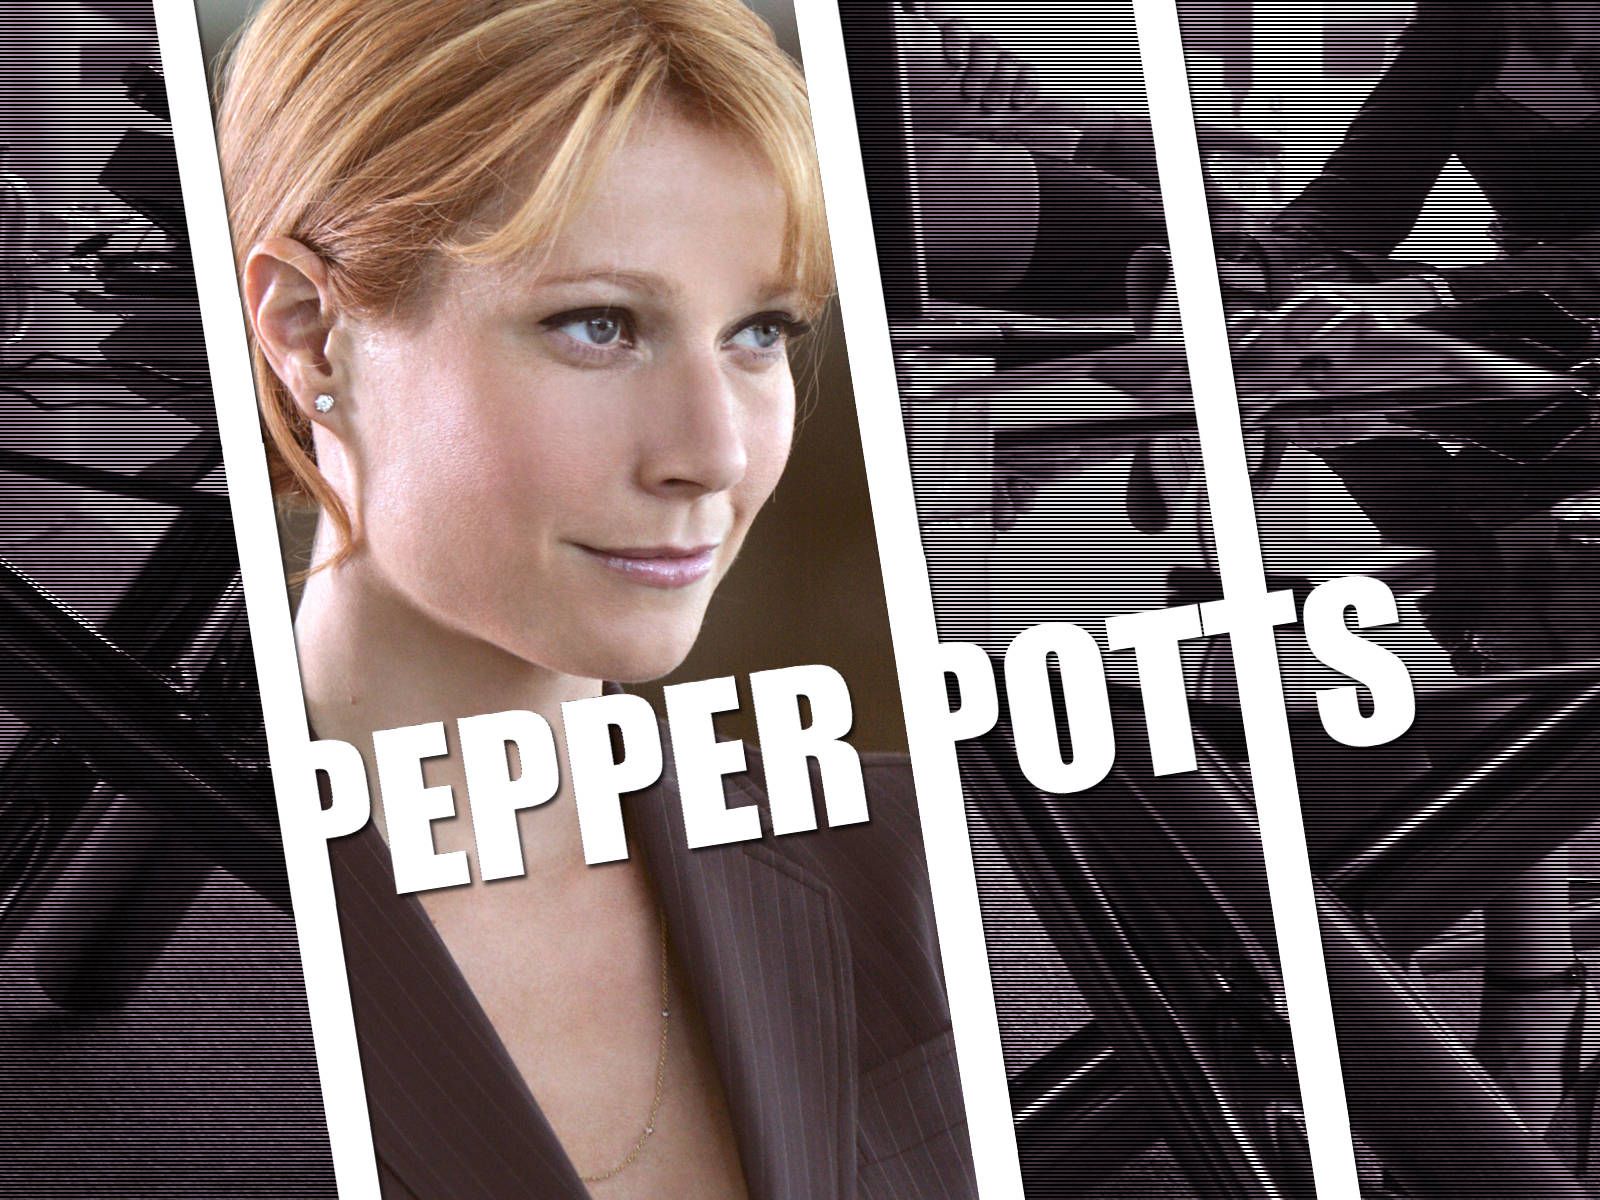 Pepper Potts Wallpaper. Pepper Potts Wallpaper, Pepper Potts Iron Man 2 Wallpaper and Ms. Potts Wallpaper